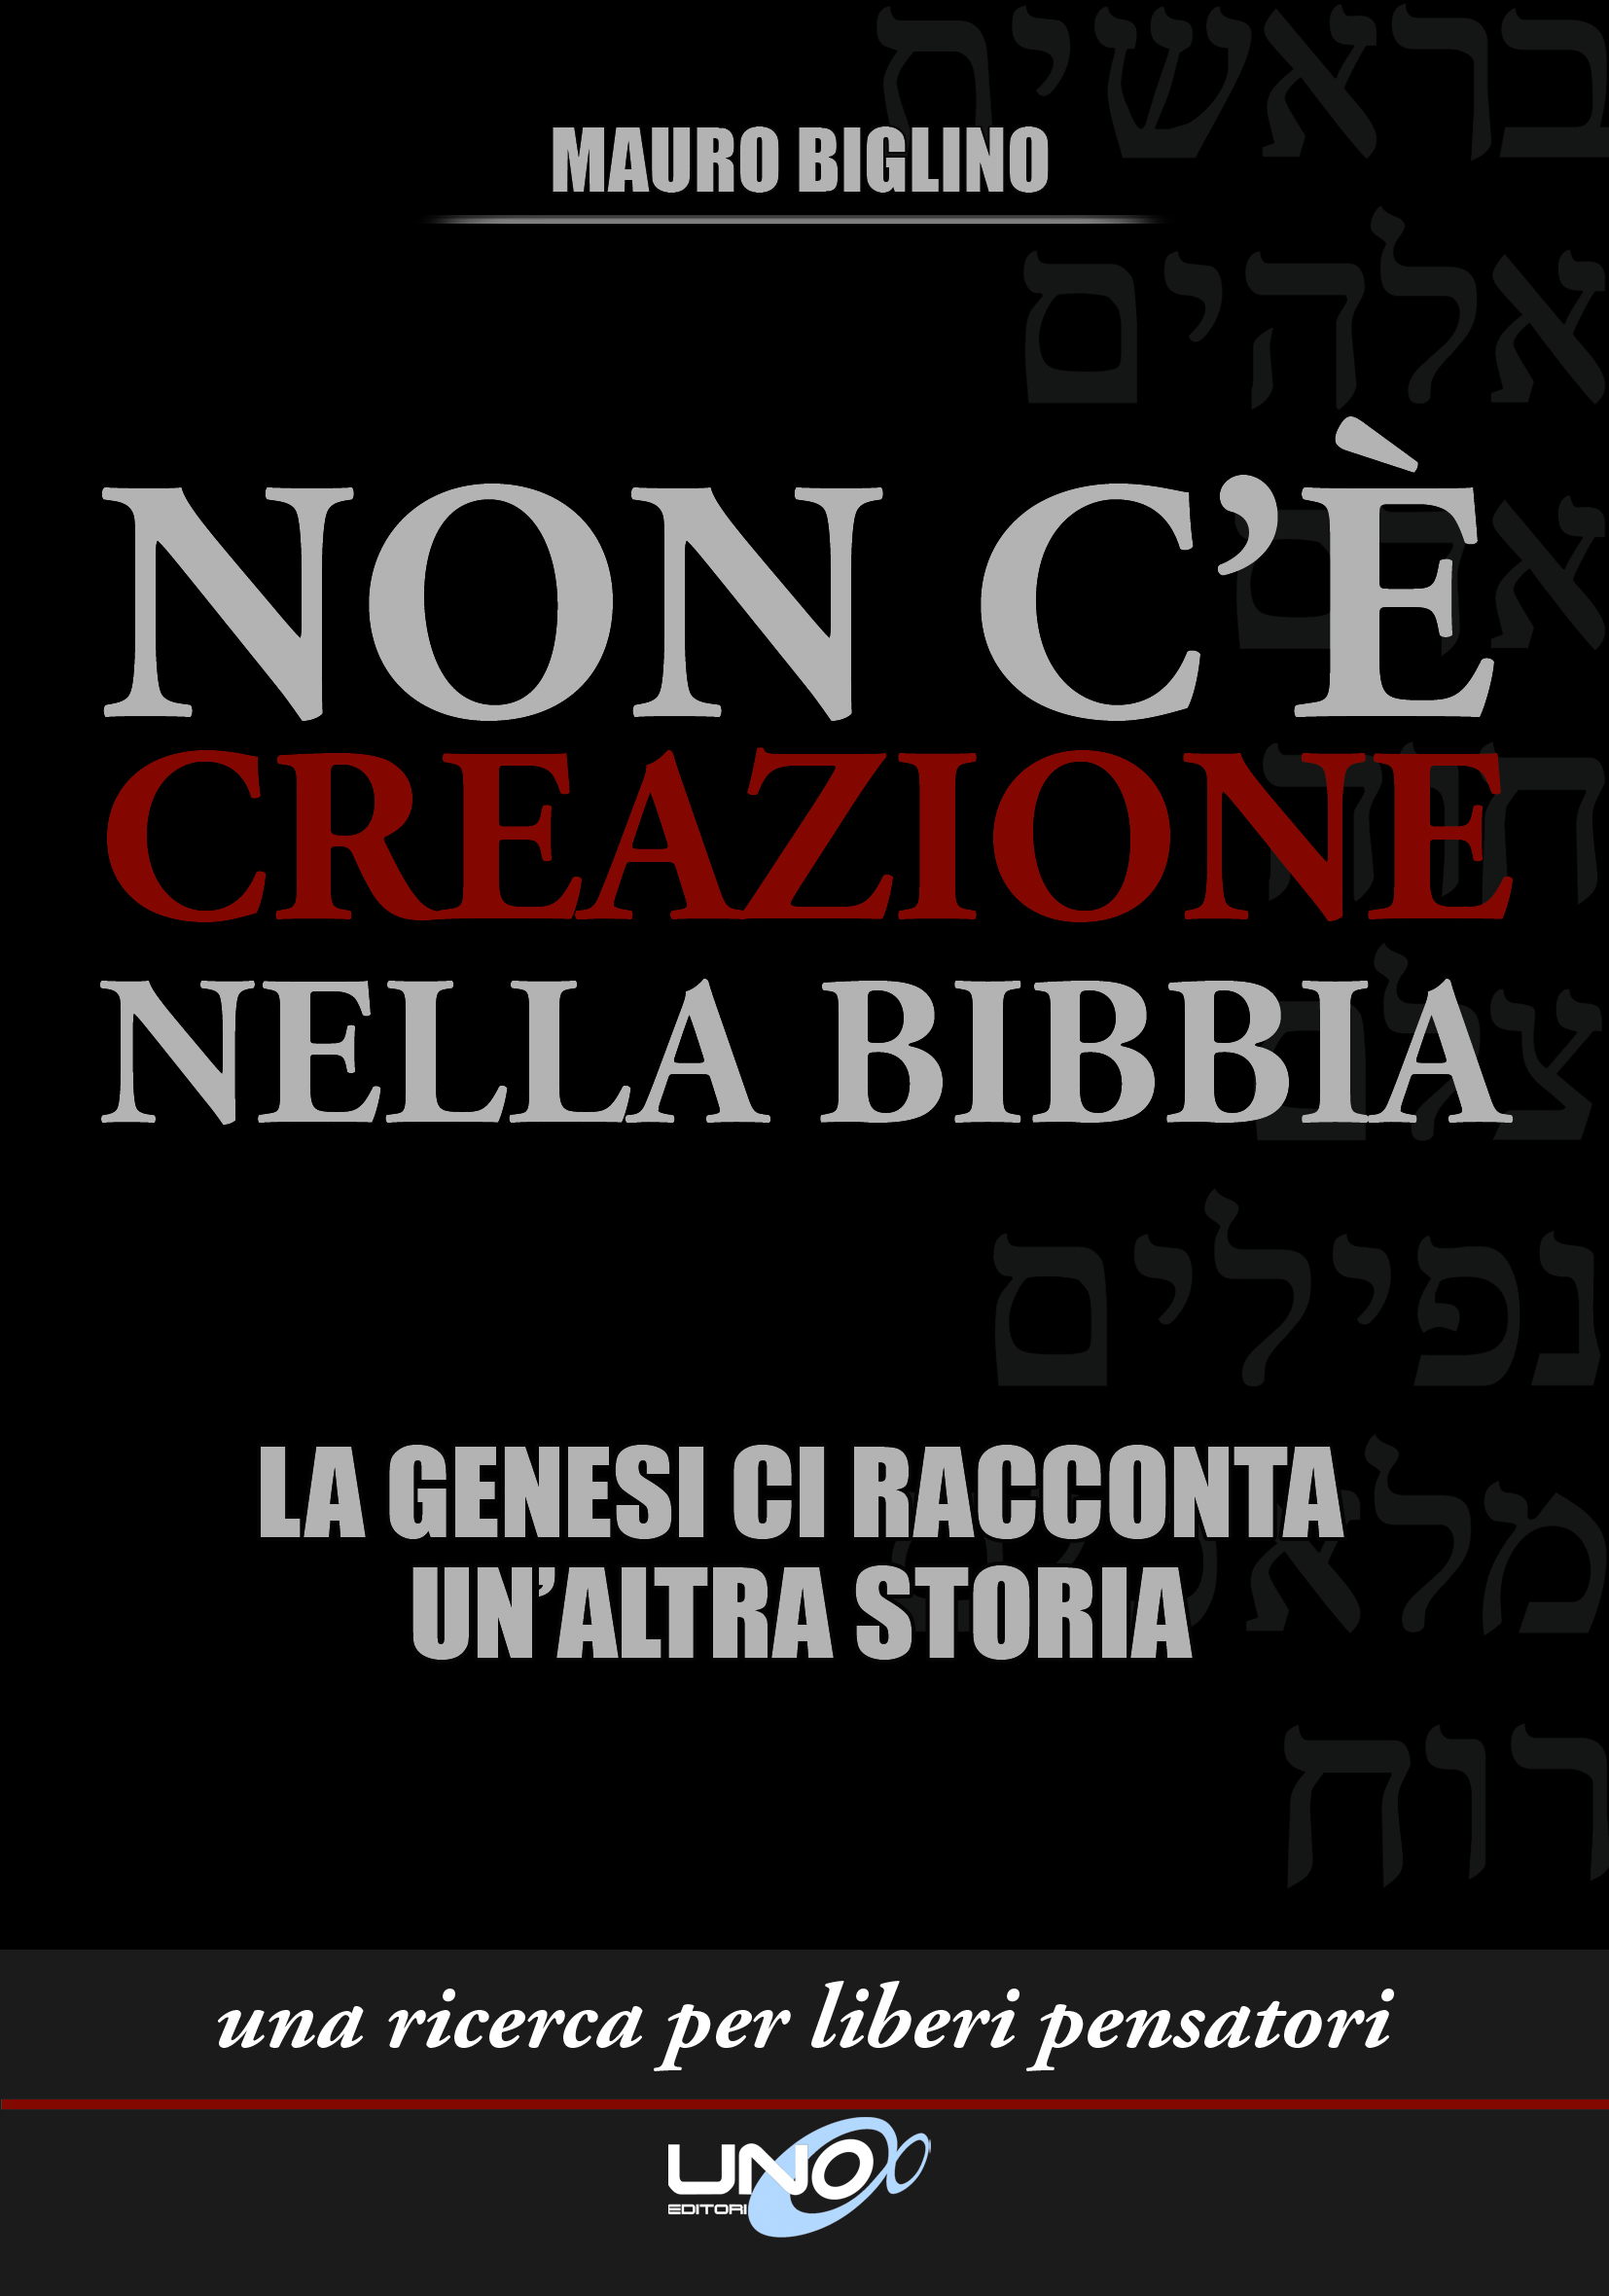 Non c’è creazione nella Bibbia – Mauro Biglino (storia)